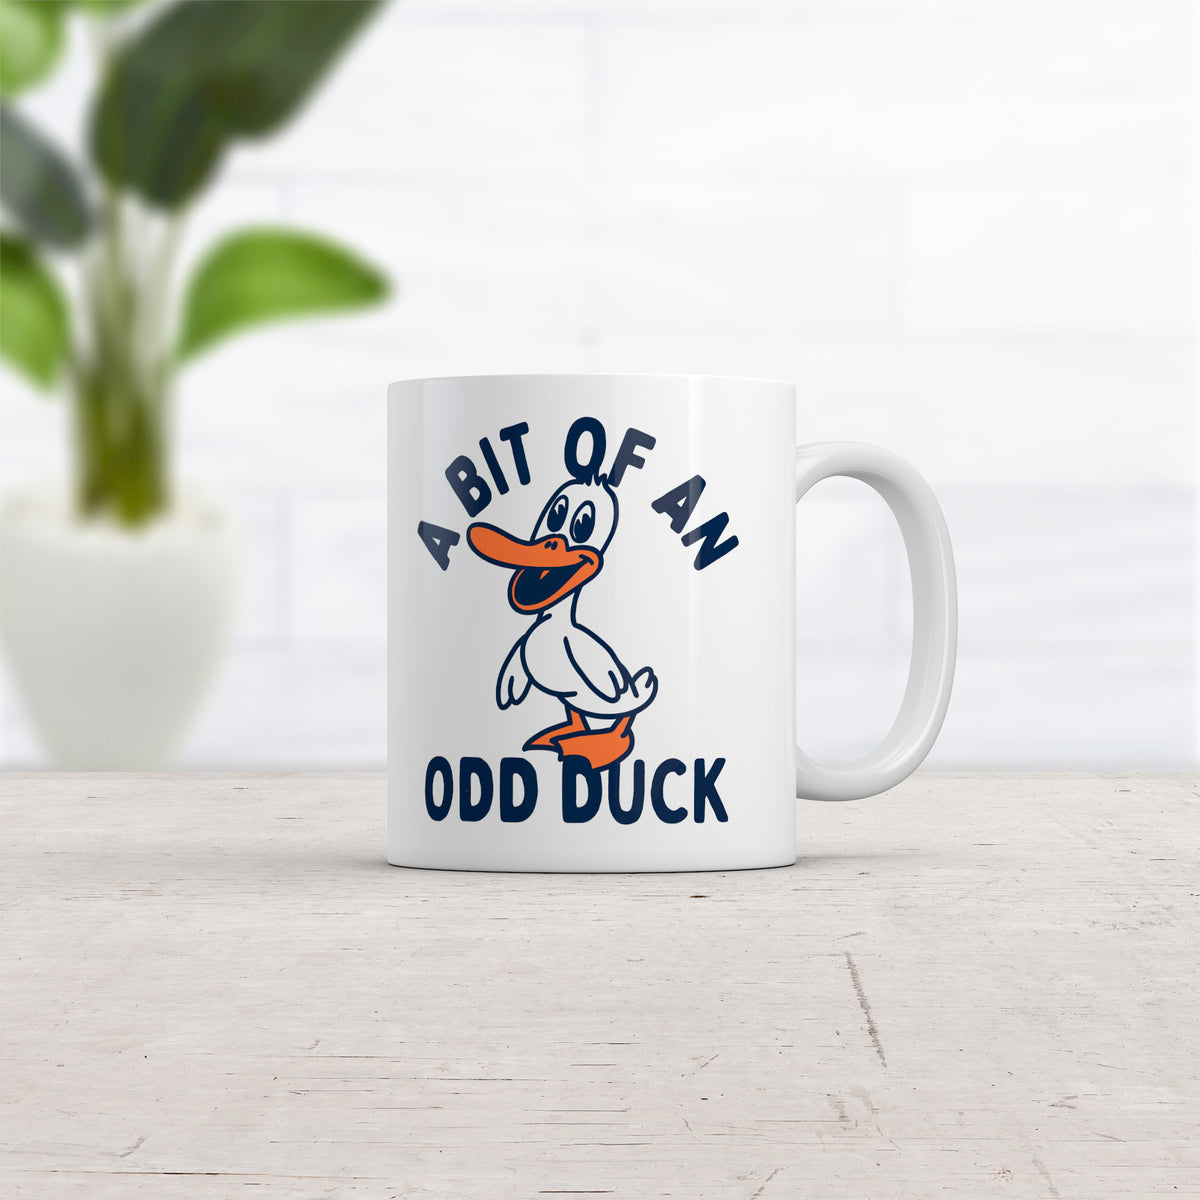 A Bit Of An Odd Duck Mug